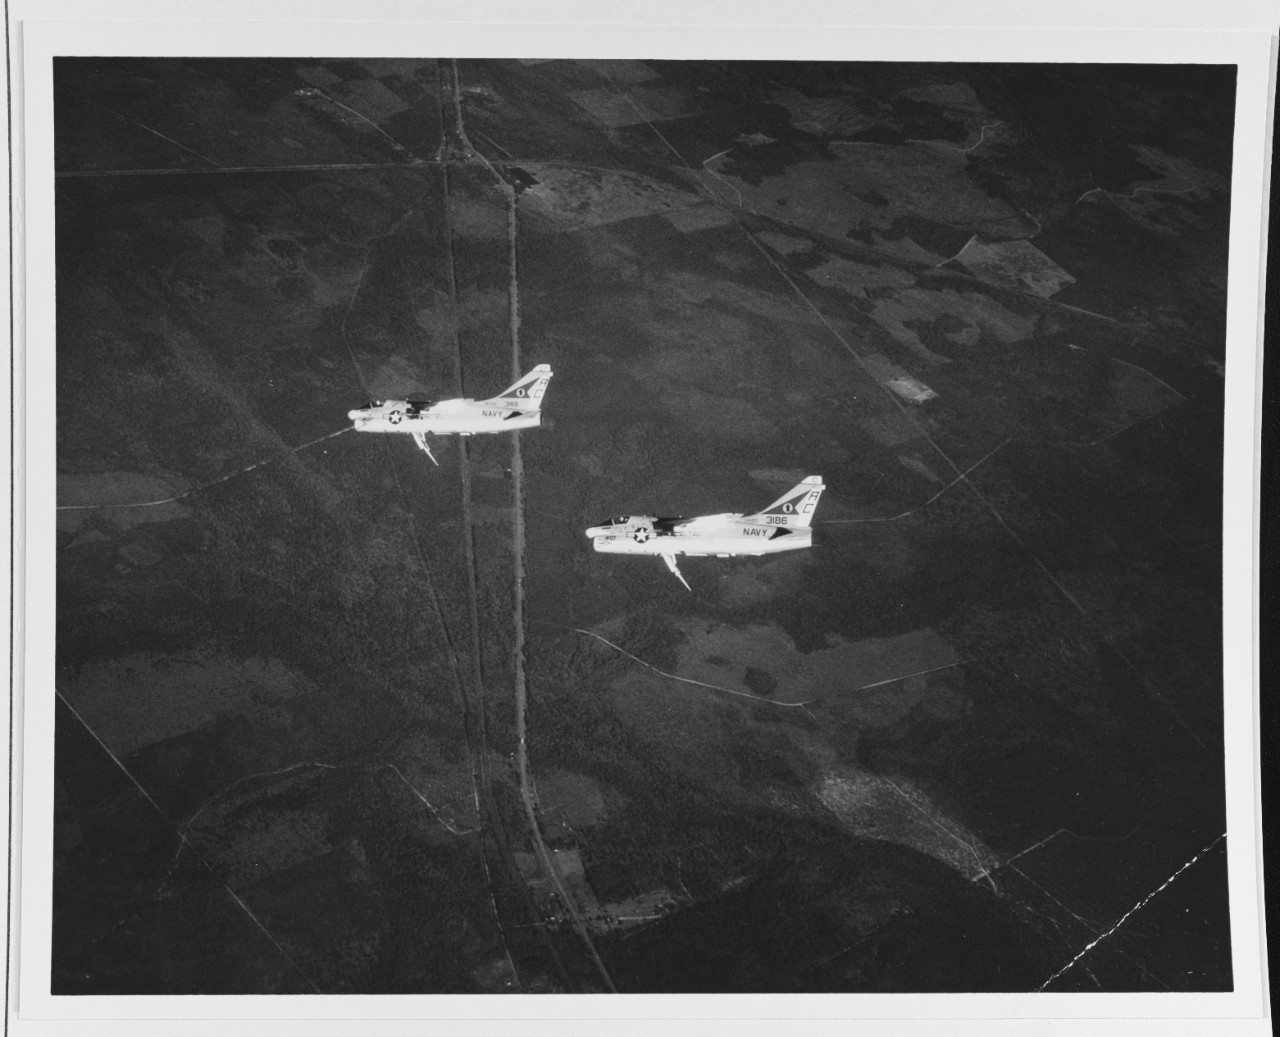 A-7A Corsair II Attack Planes